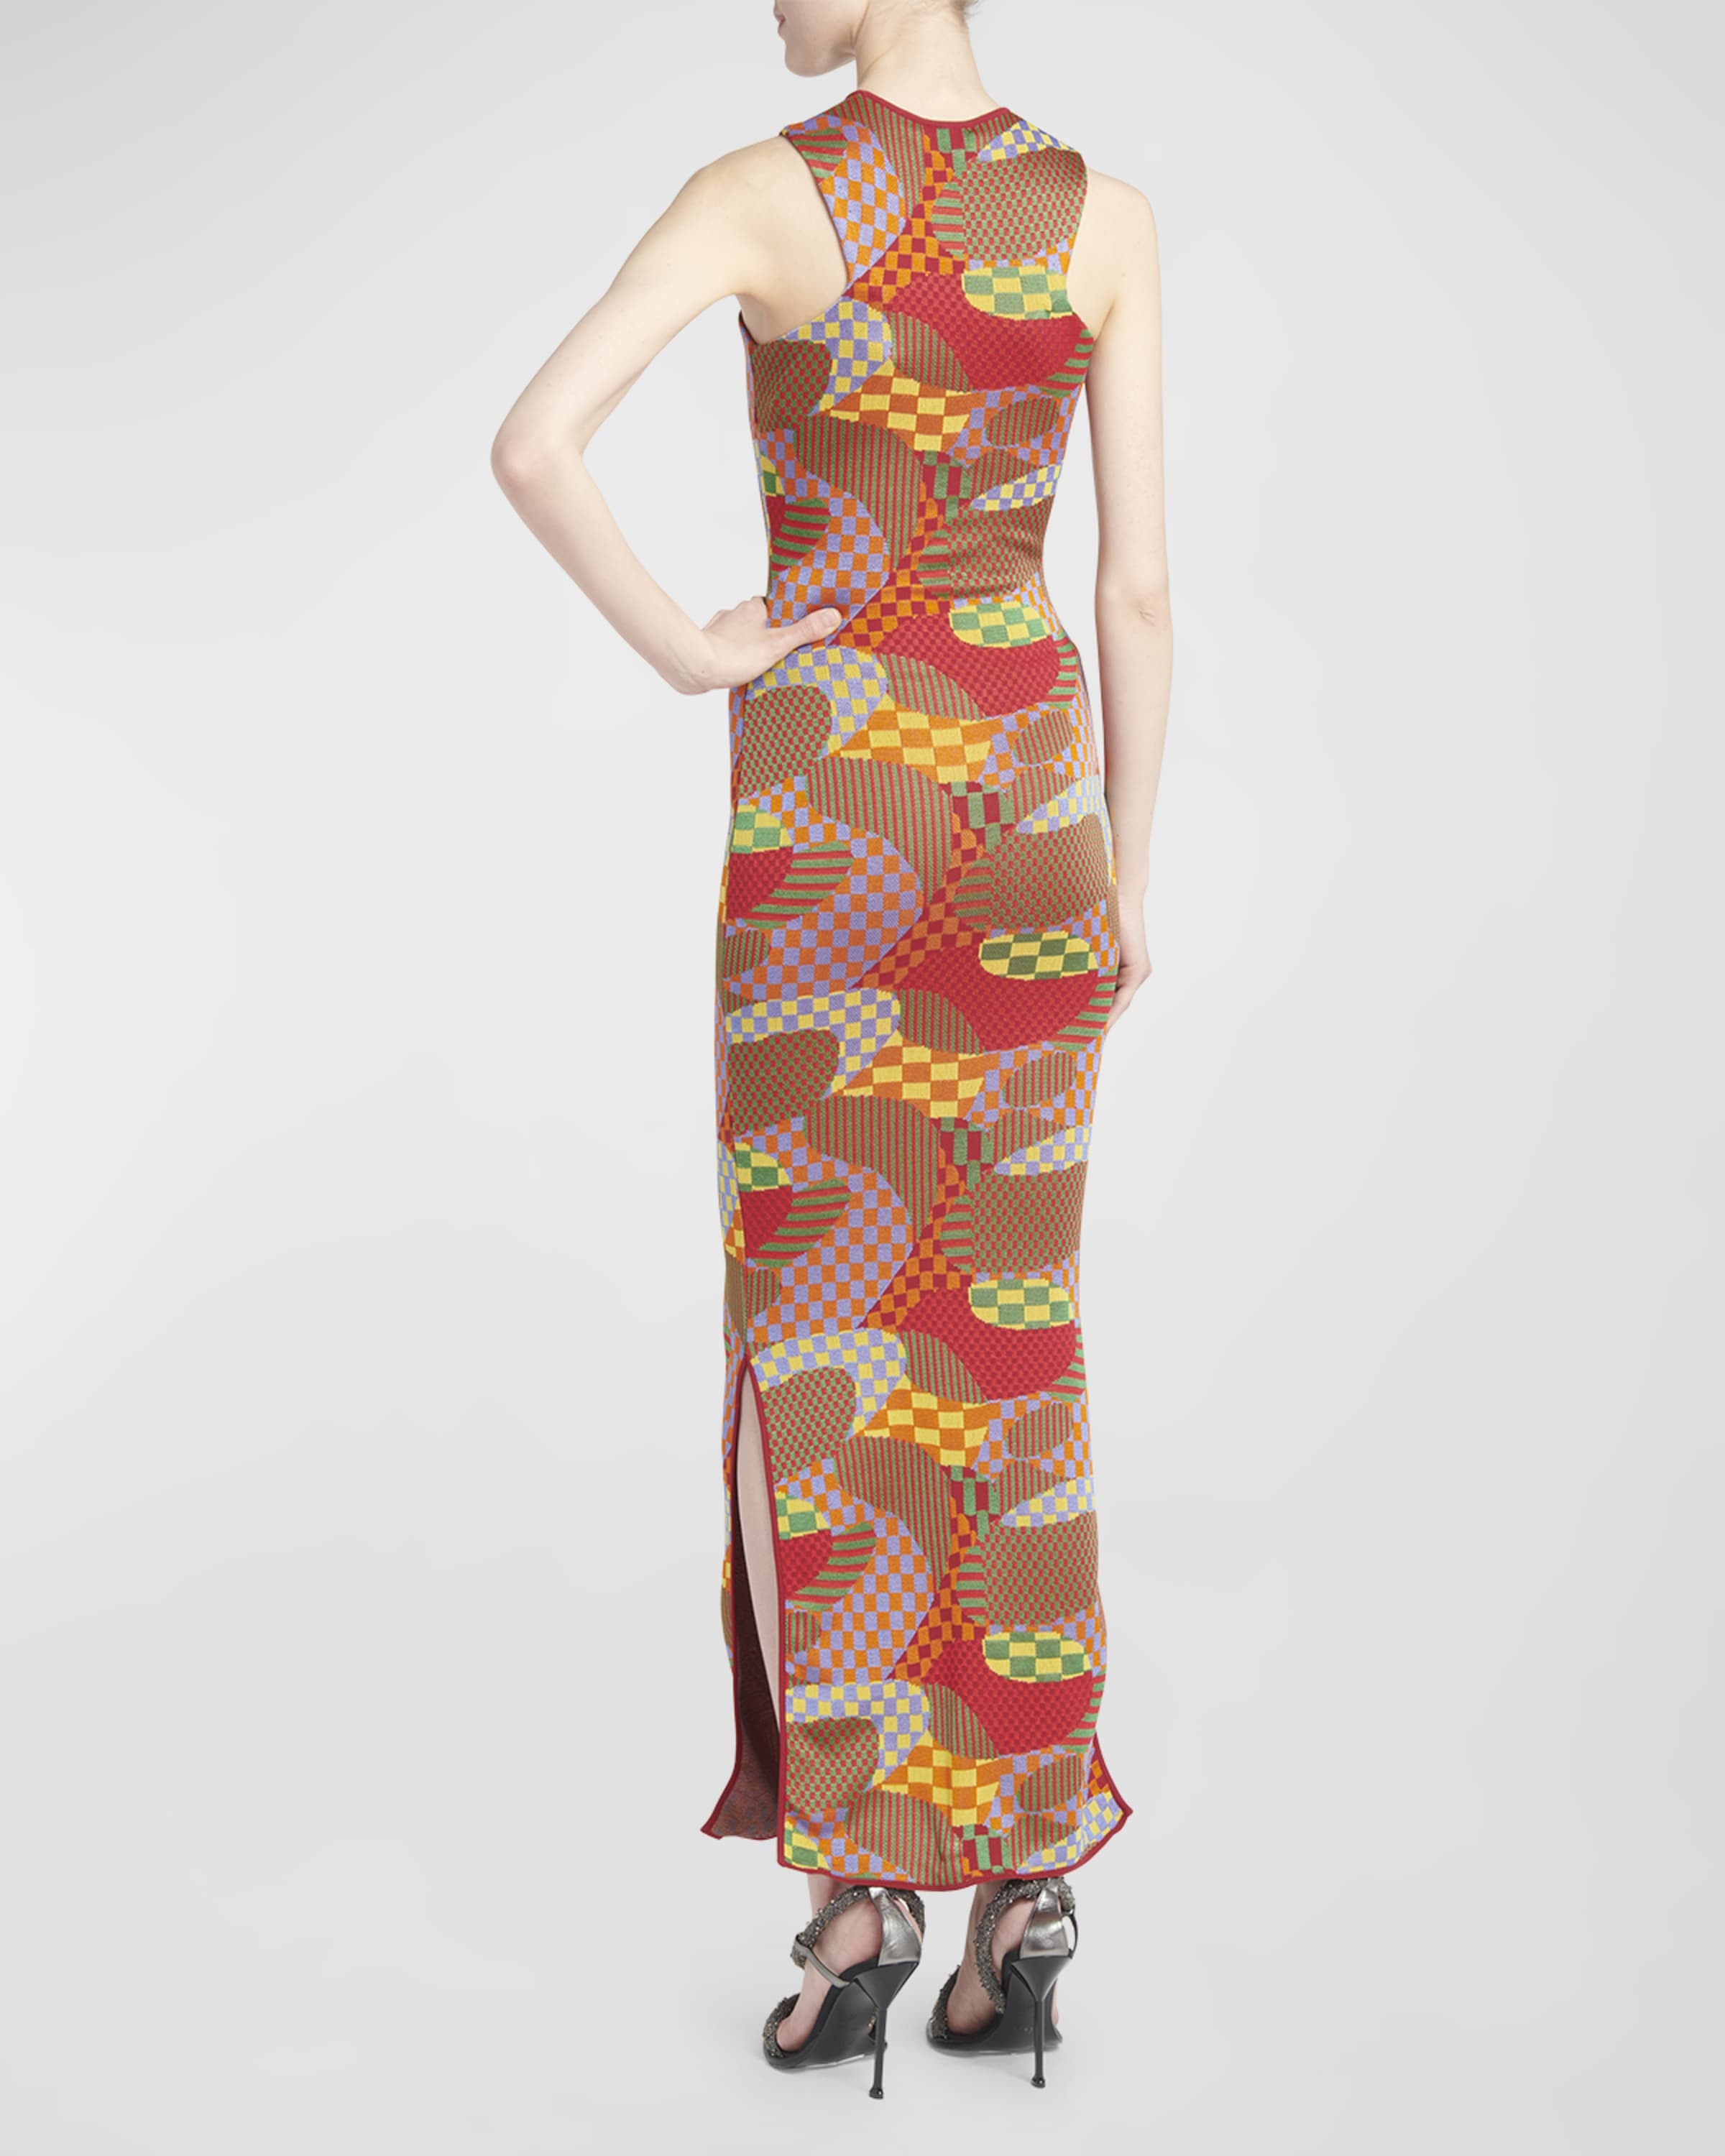 Abstract Knit Sleeveless Slits-Hem Maxi Dress - 4